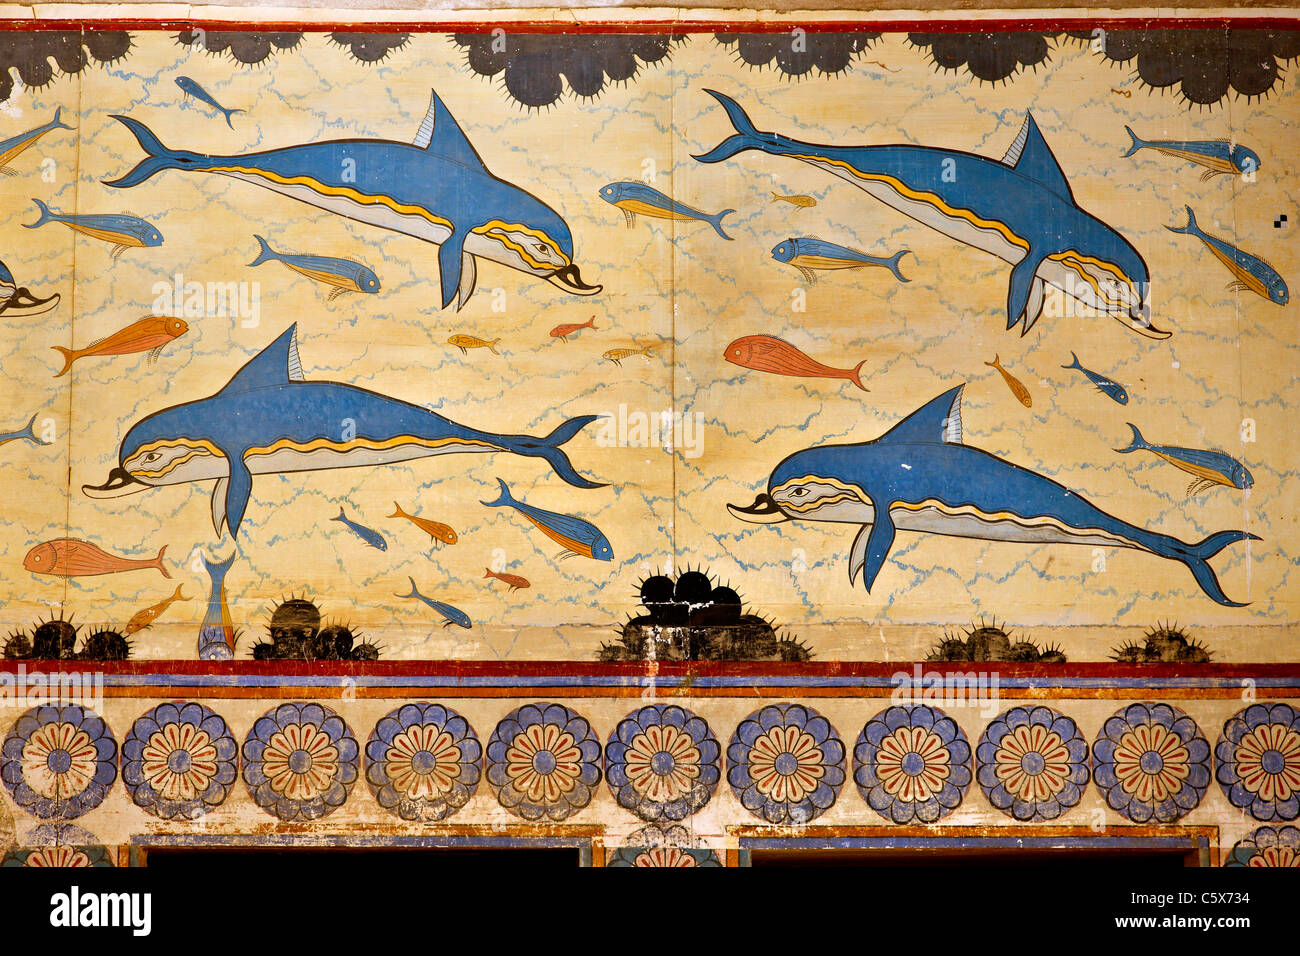 La fresque des dauphins de l'imprimeur de la Pine au palais minoen de Knossos, Héraklion, Crète, Grèce Banque D'Images